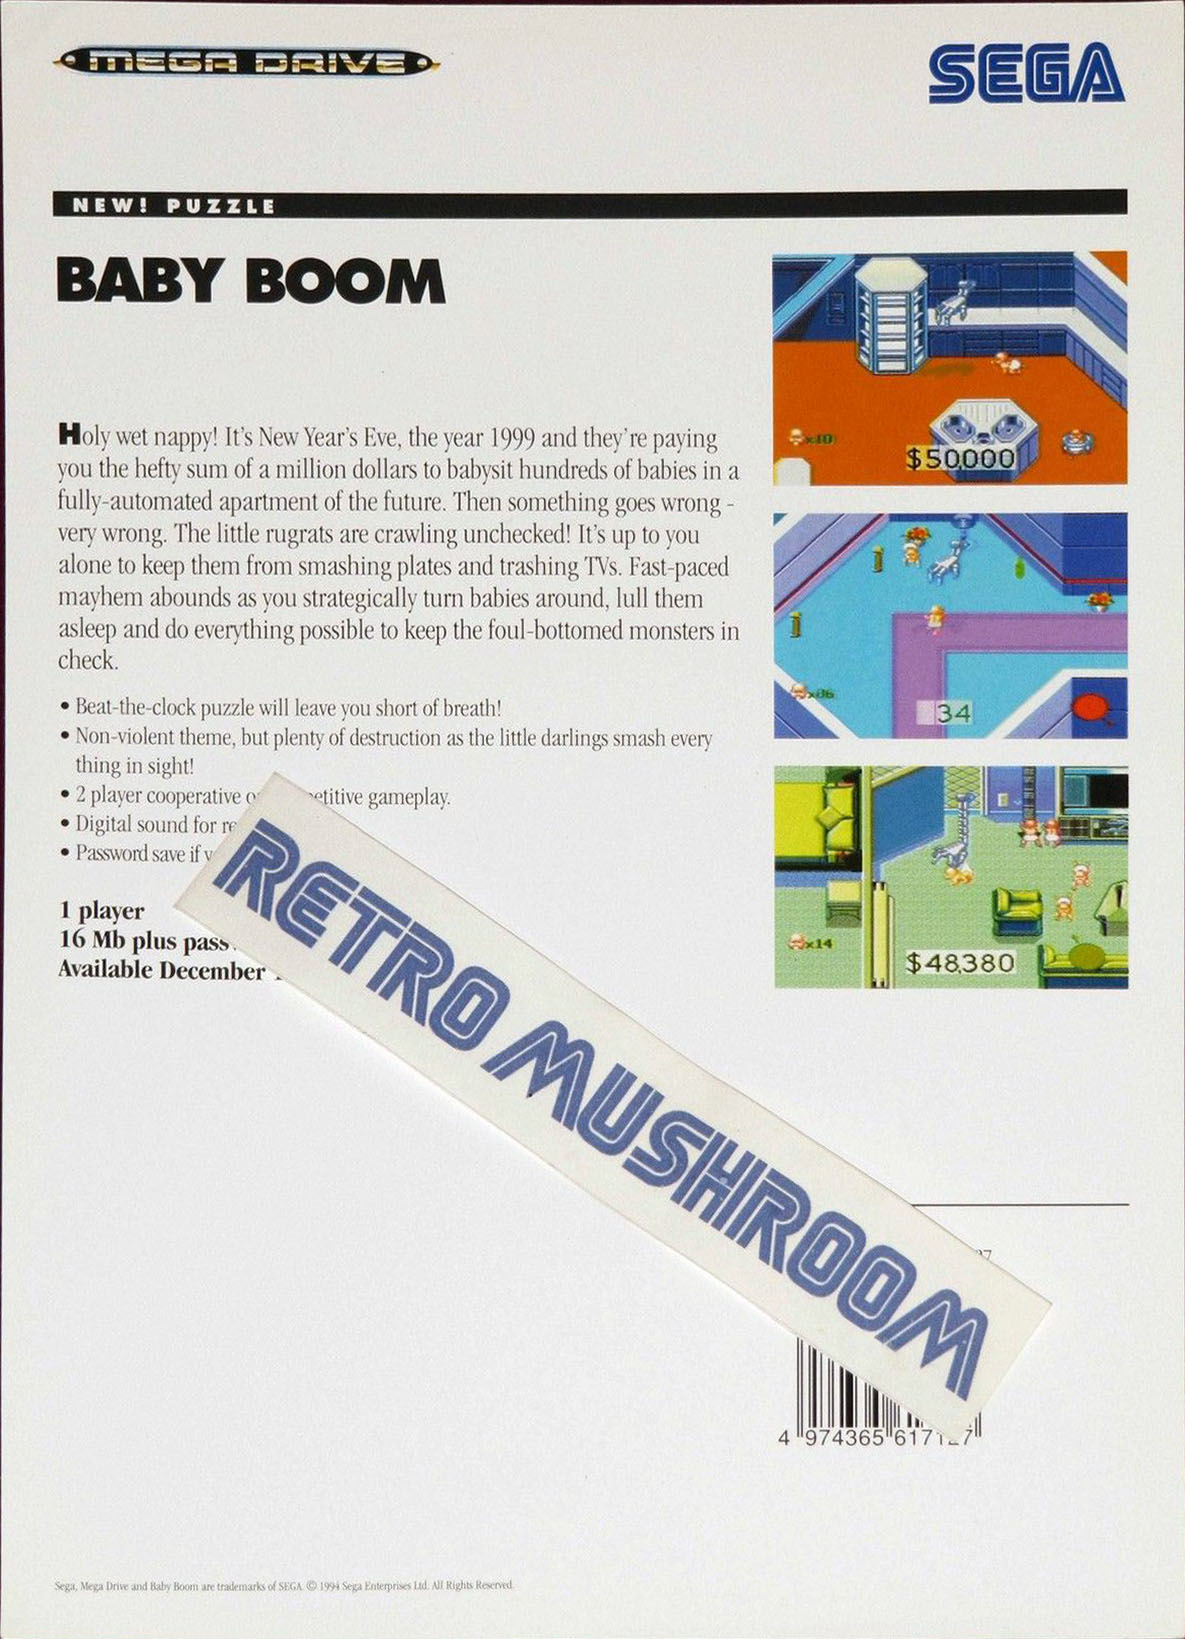 Baby Boom Genesis.JPG